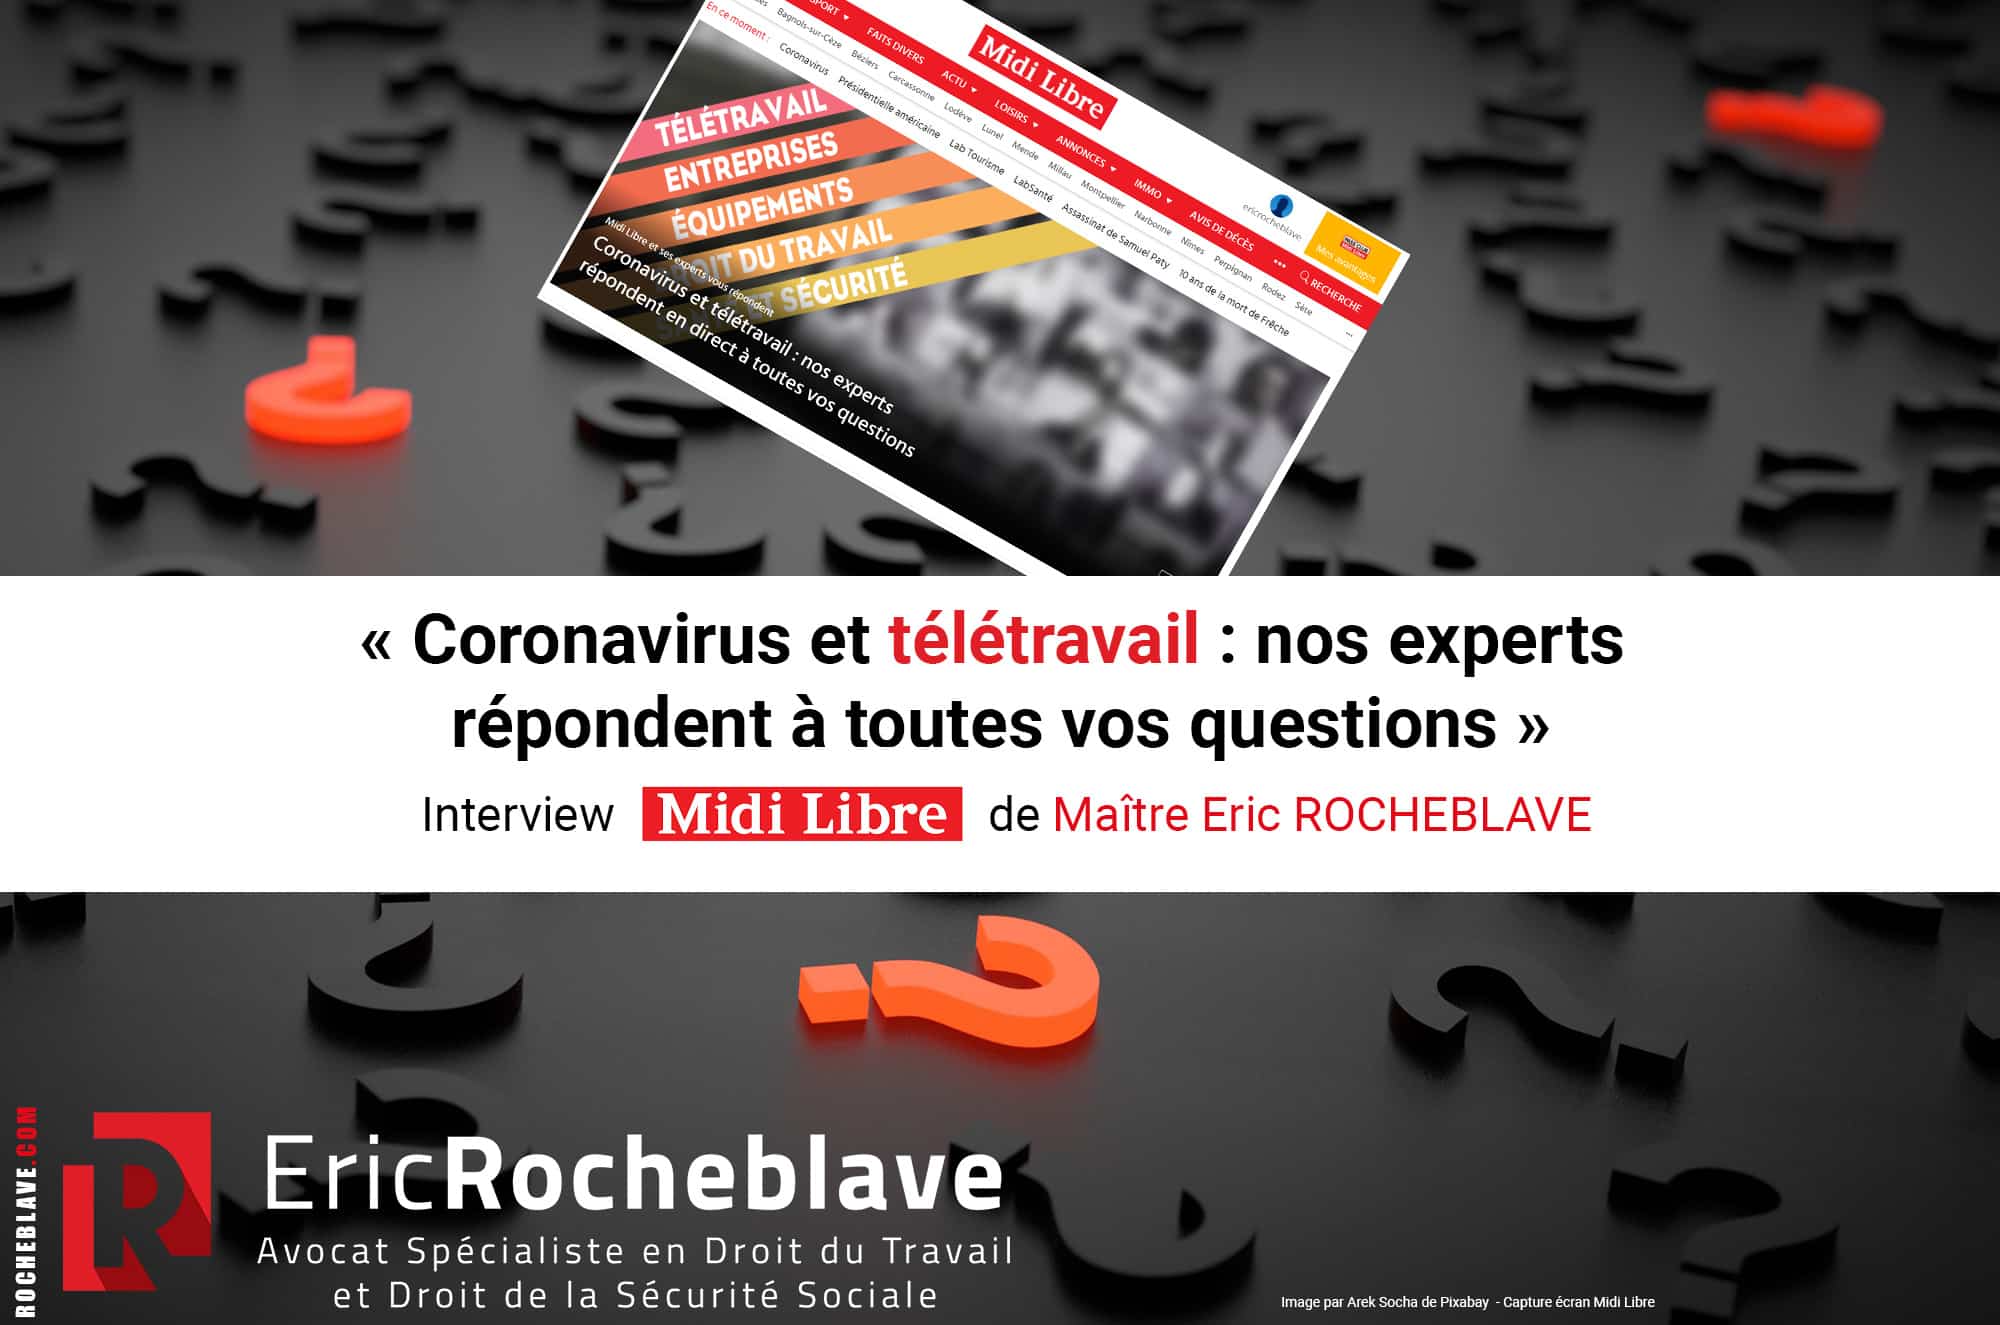 « Coronavirus et télétravail : nos experts répondent à toutes vos questions » Interview Midi Libre de Maître Eric ROCHEBLAVE